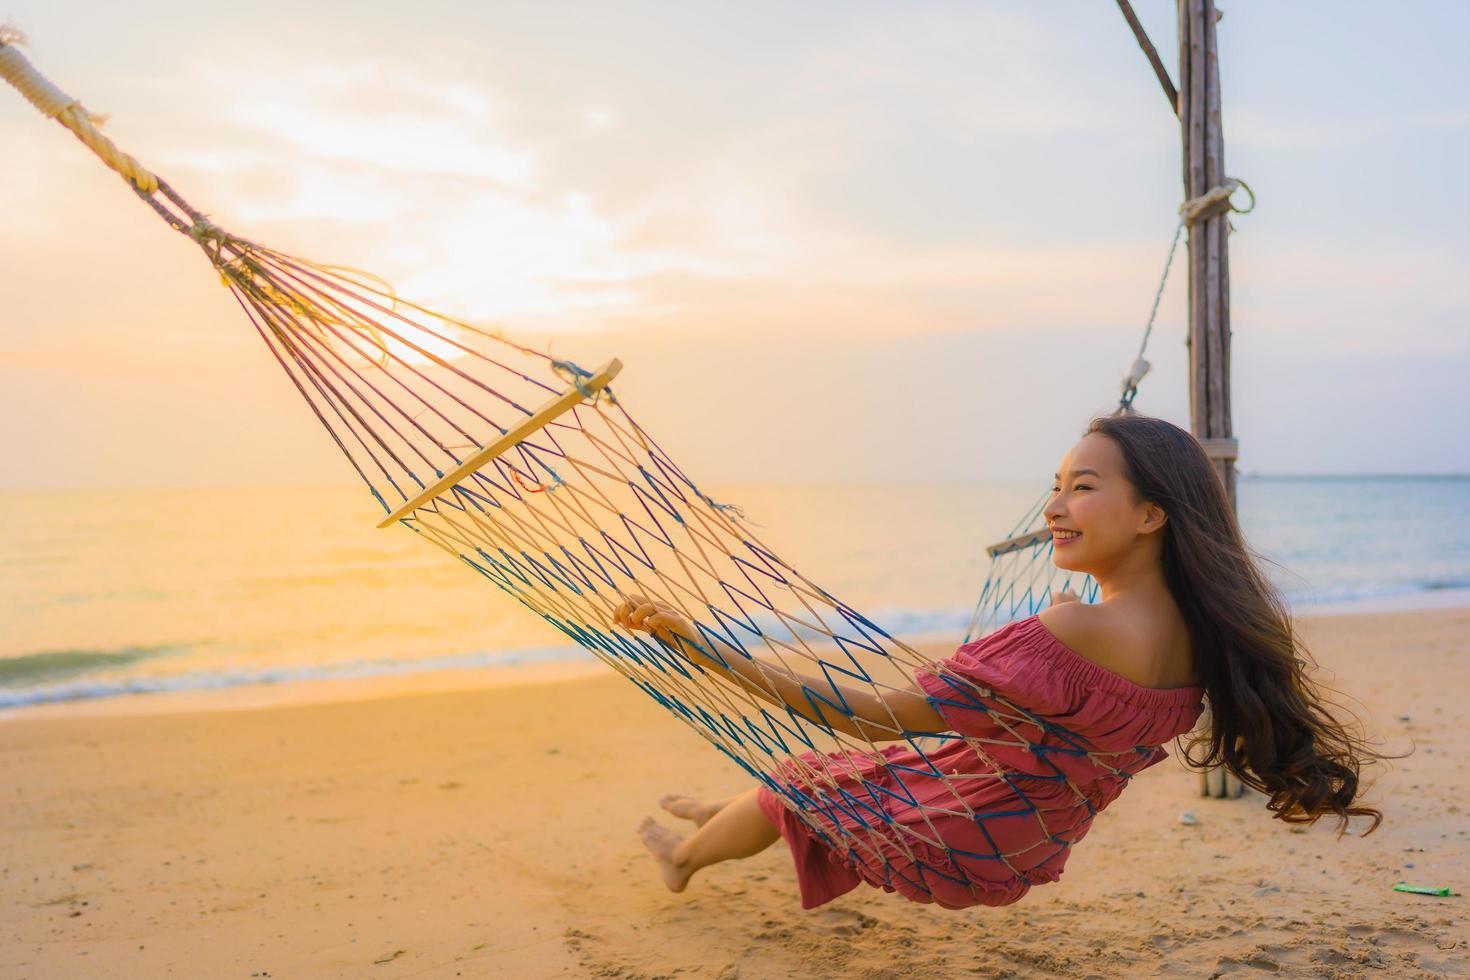 ritratto bella giovane donna asiatica seduta sull'amaca con sorriso felice spiaggia vicina mare e oceano foto